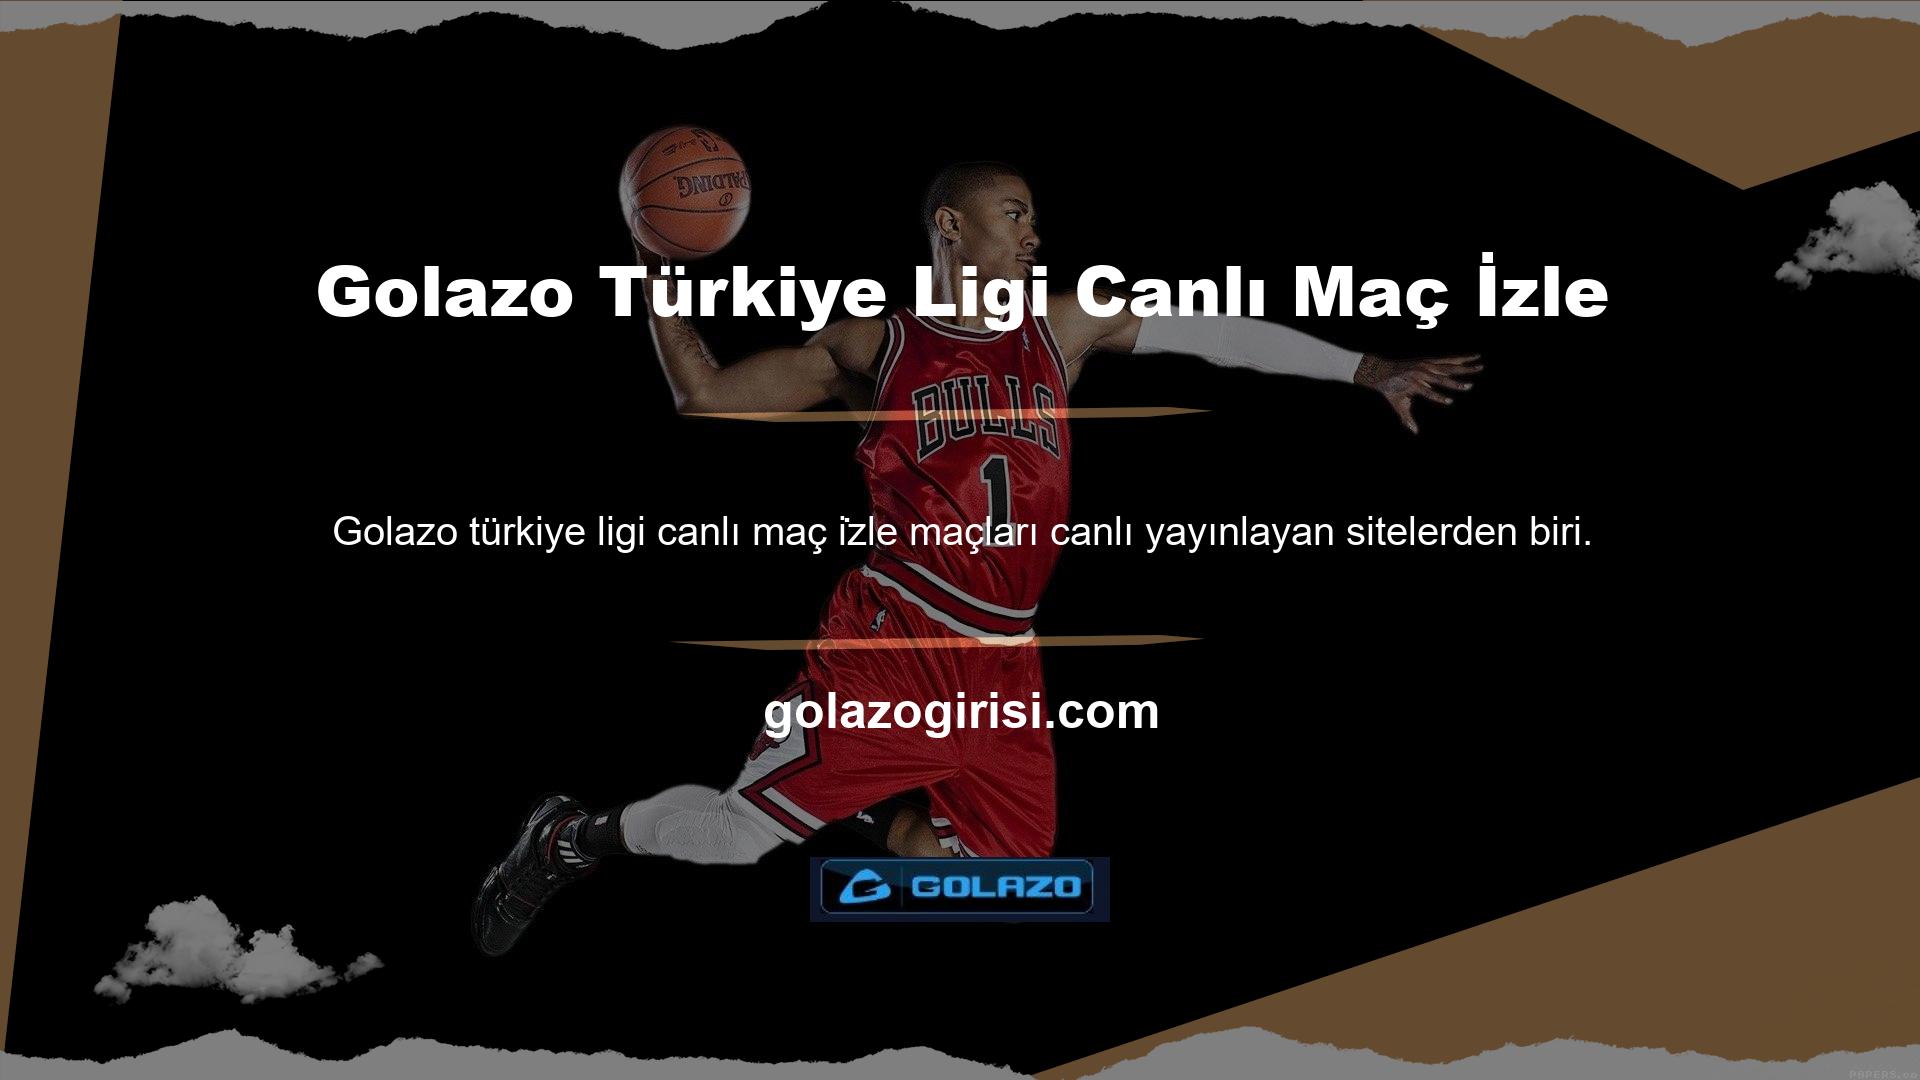 Türkiye ligi maçlarını yüksek kalitede ve hd kalitede ücretsiz olarak izleyebilirsiniz